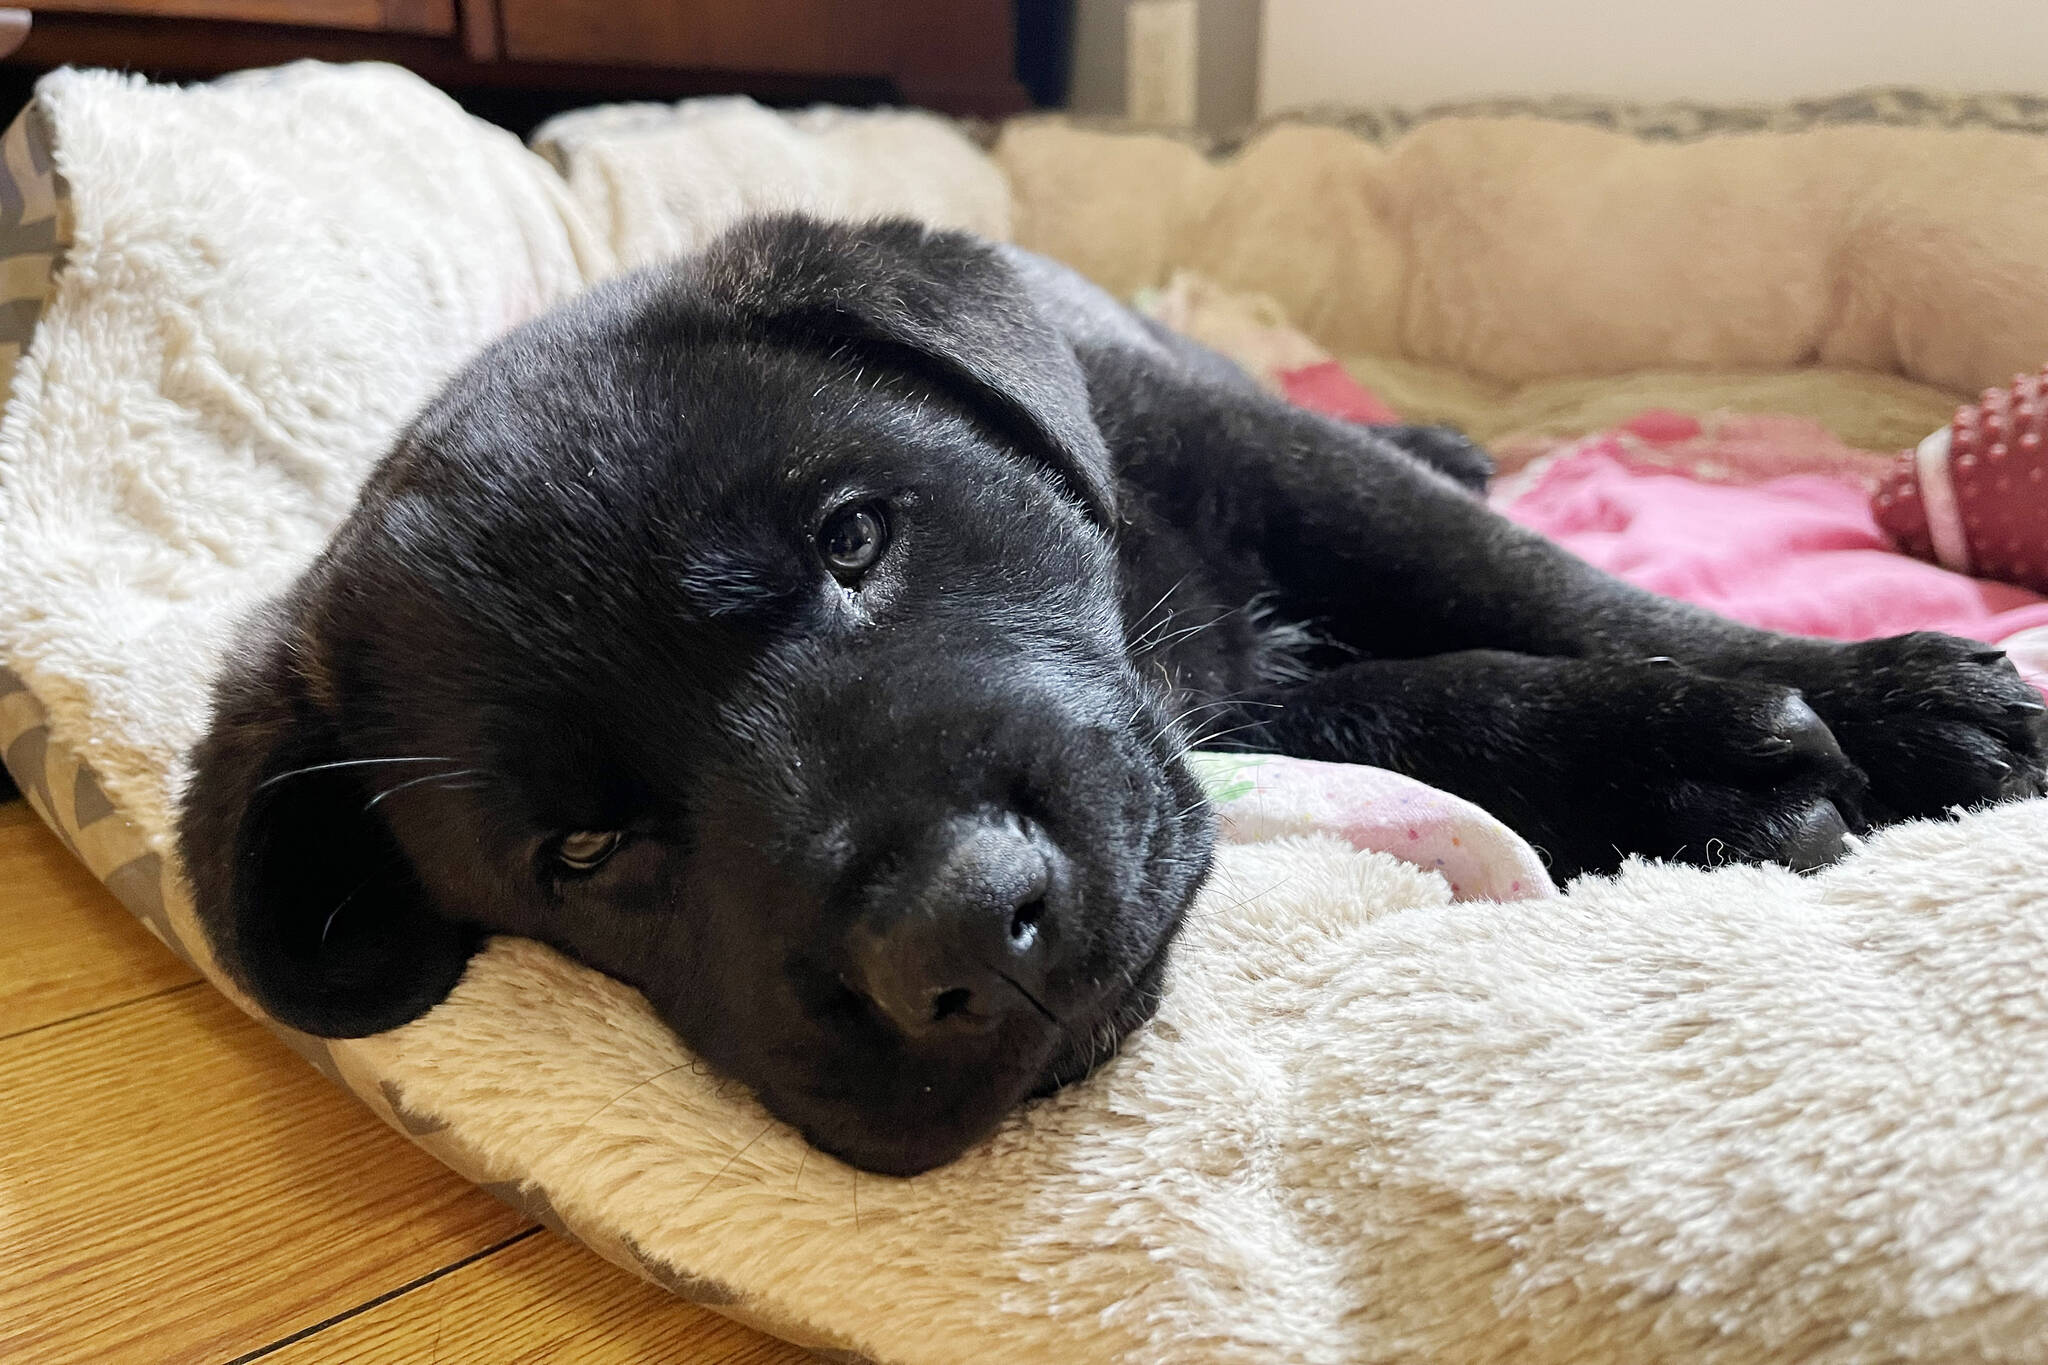 Ziggy’s Rescue in Port Alberni gives refuge for dogs | Alberni.ca